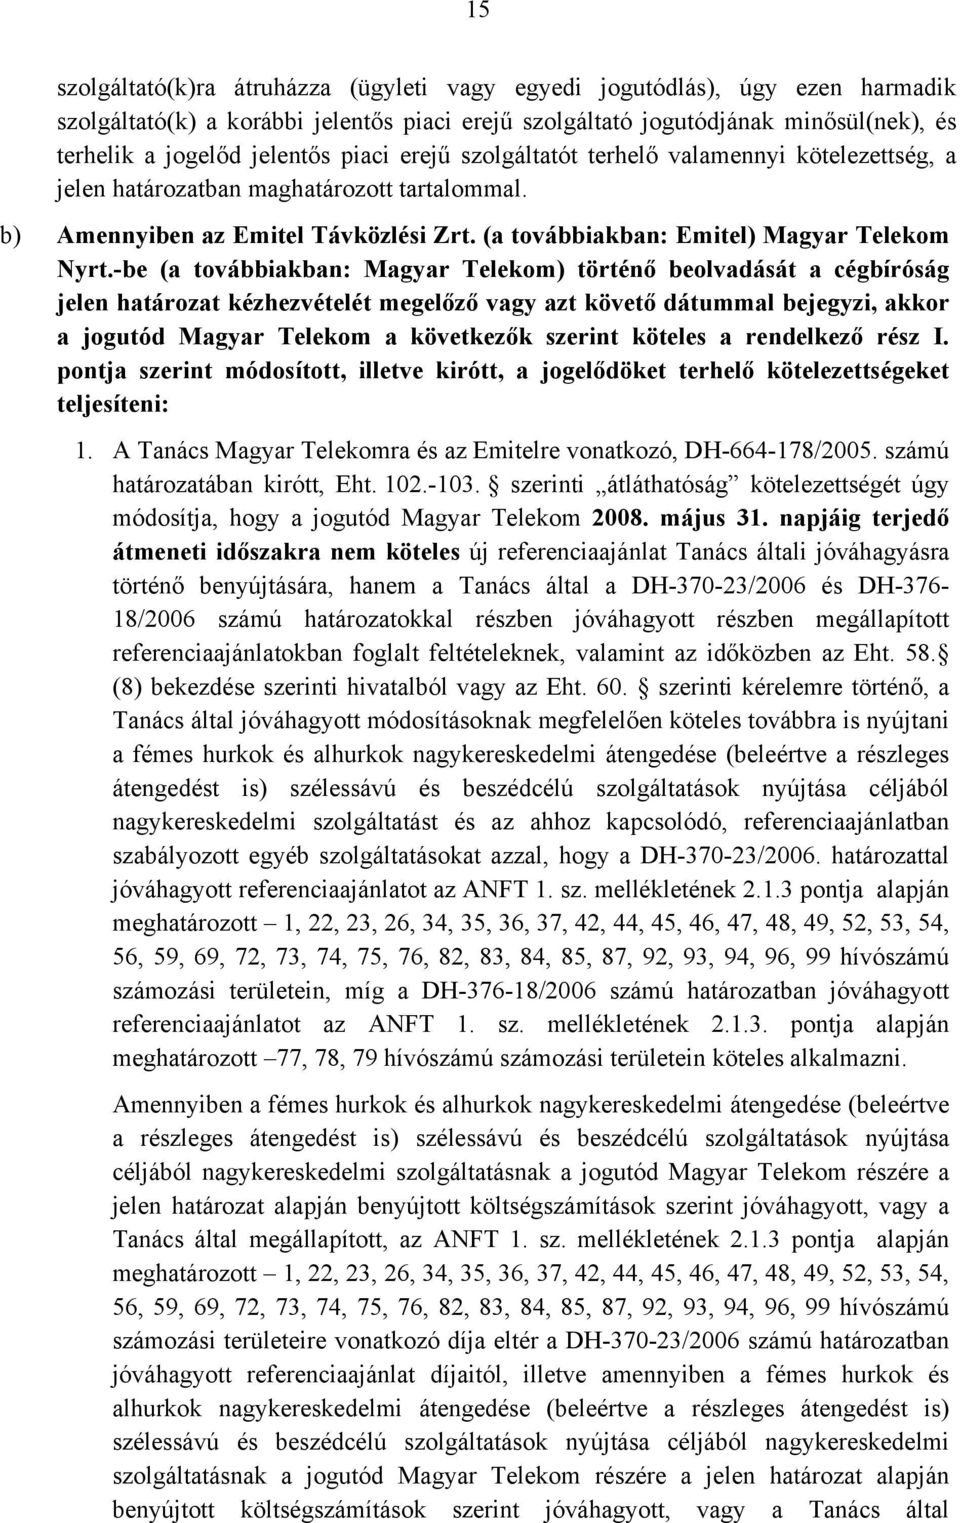 -be (a továbbiakban: Magyar Telekom) történő beolvadását a cégbíróság jelen határozat kézhezvételét megelőző vagy azt követő dátummal bejegyzi, akkor a jogutód Magyar Telekom a következők szerint